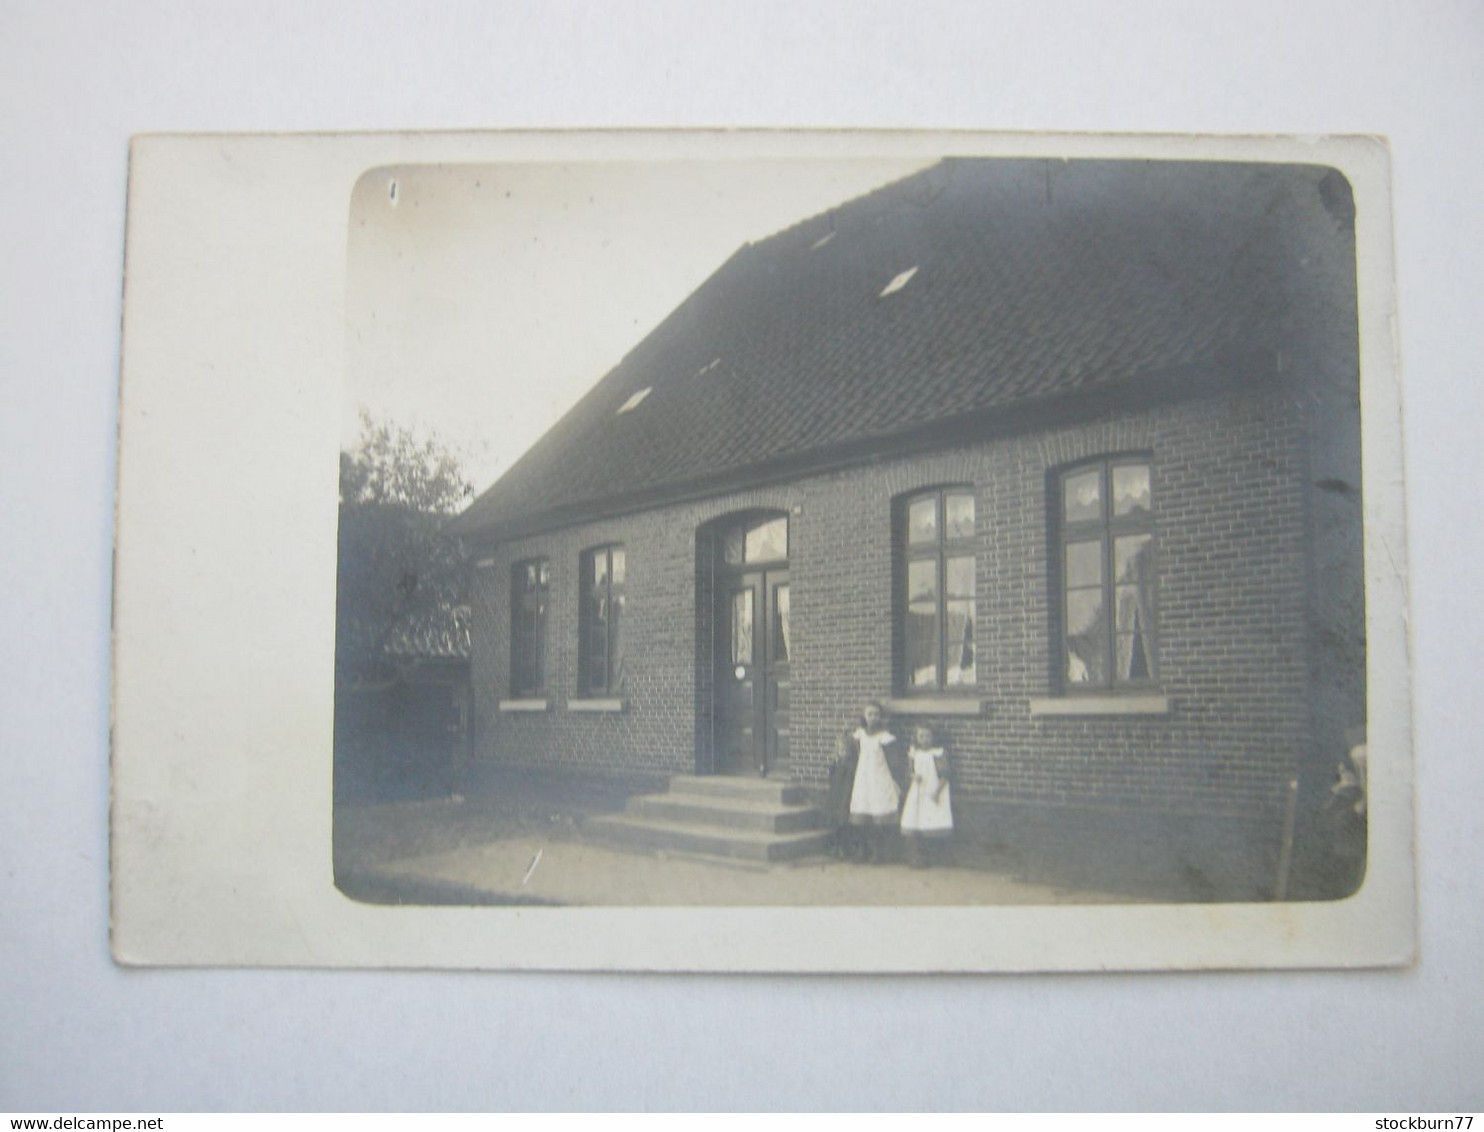 WINSEN ( Luhe) , Fotokarte Hausnummer 10 , Schöne Karte Um  1916,  Siehe  2 Abbildungen - Winsen